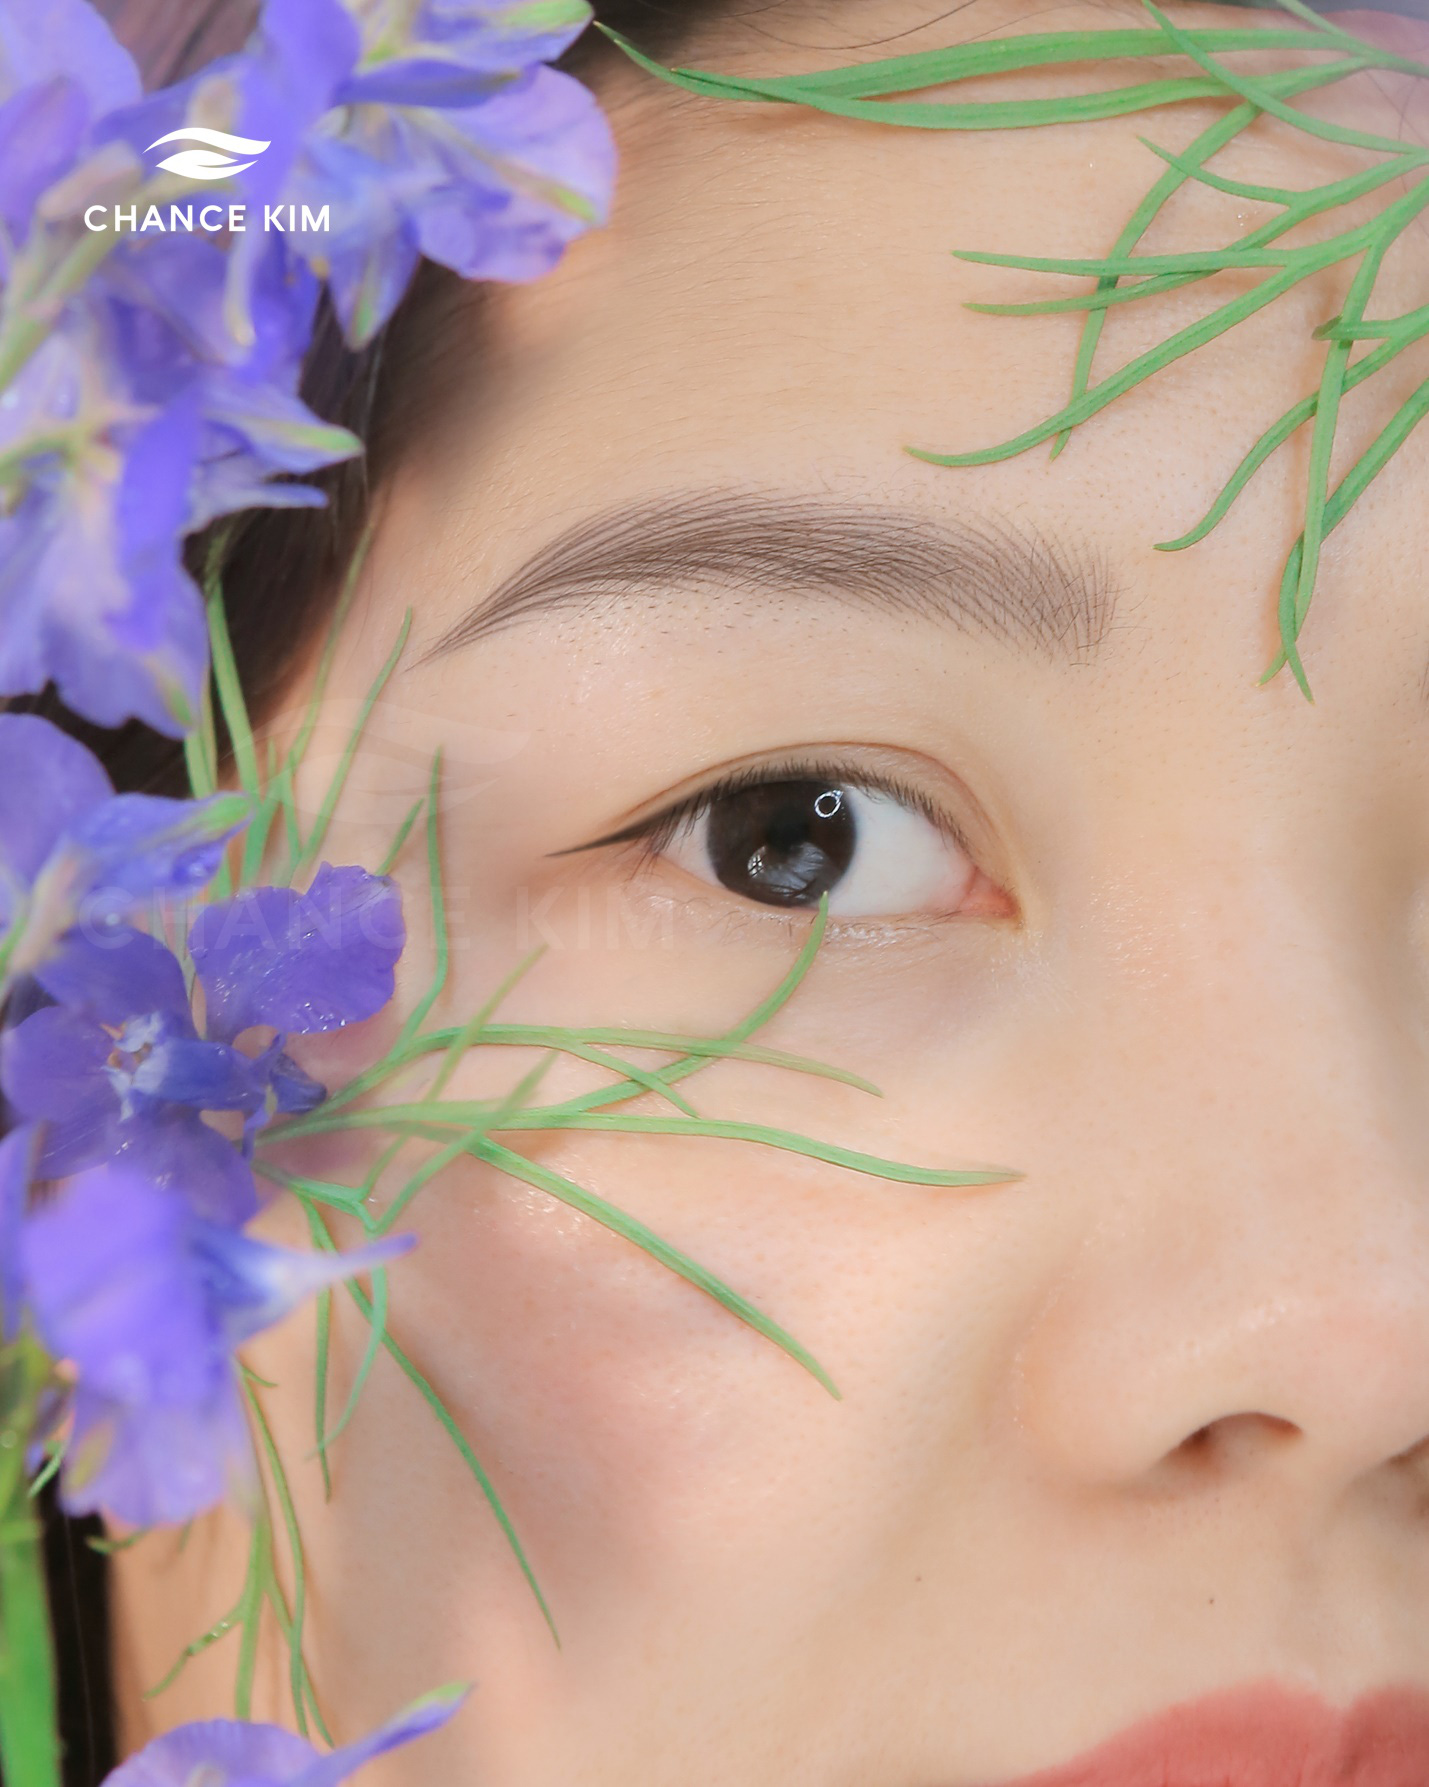 Chance Kim Brows - thương hiệu hàng đầu trong công nghệ tạo sợi lông mày phong cách tự nhiên - Ảnh 3.